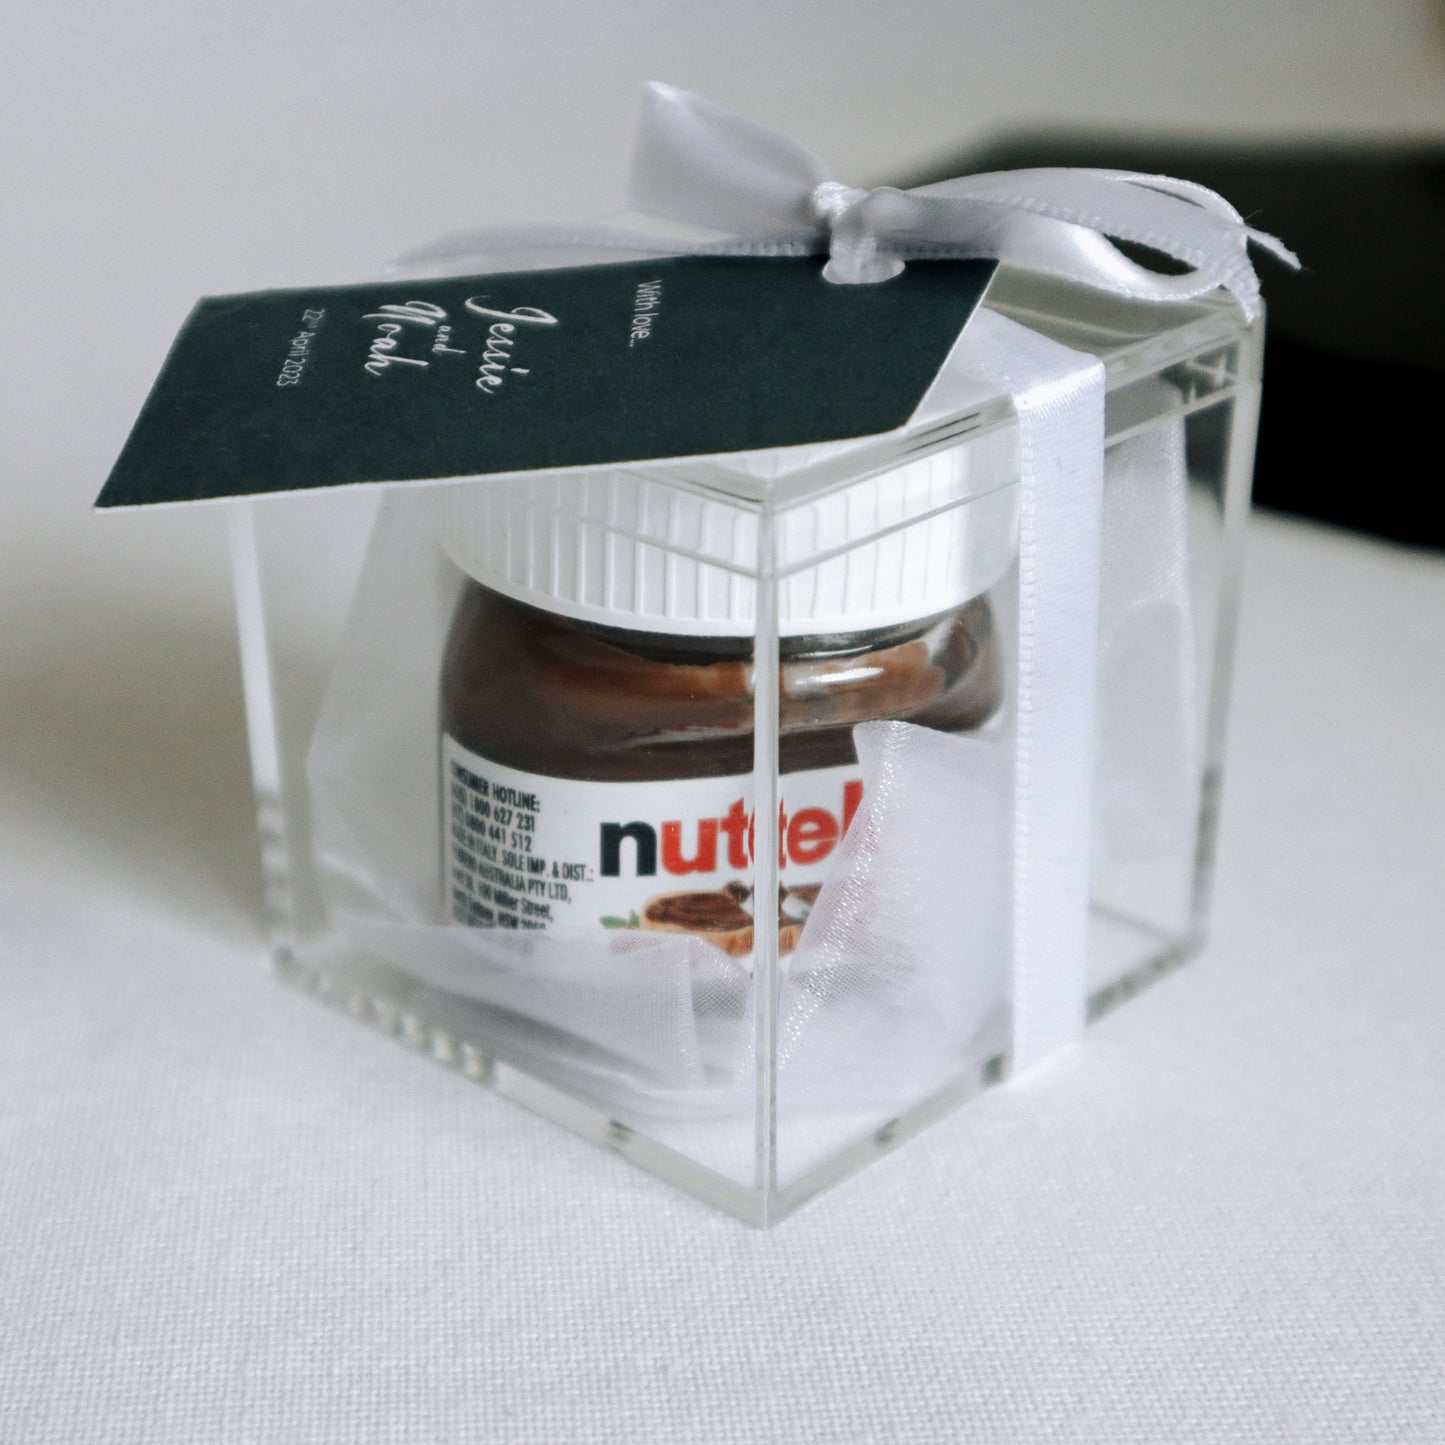 Mini Nutella Bonbonniere Favour in Acrylic Box